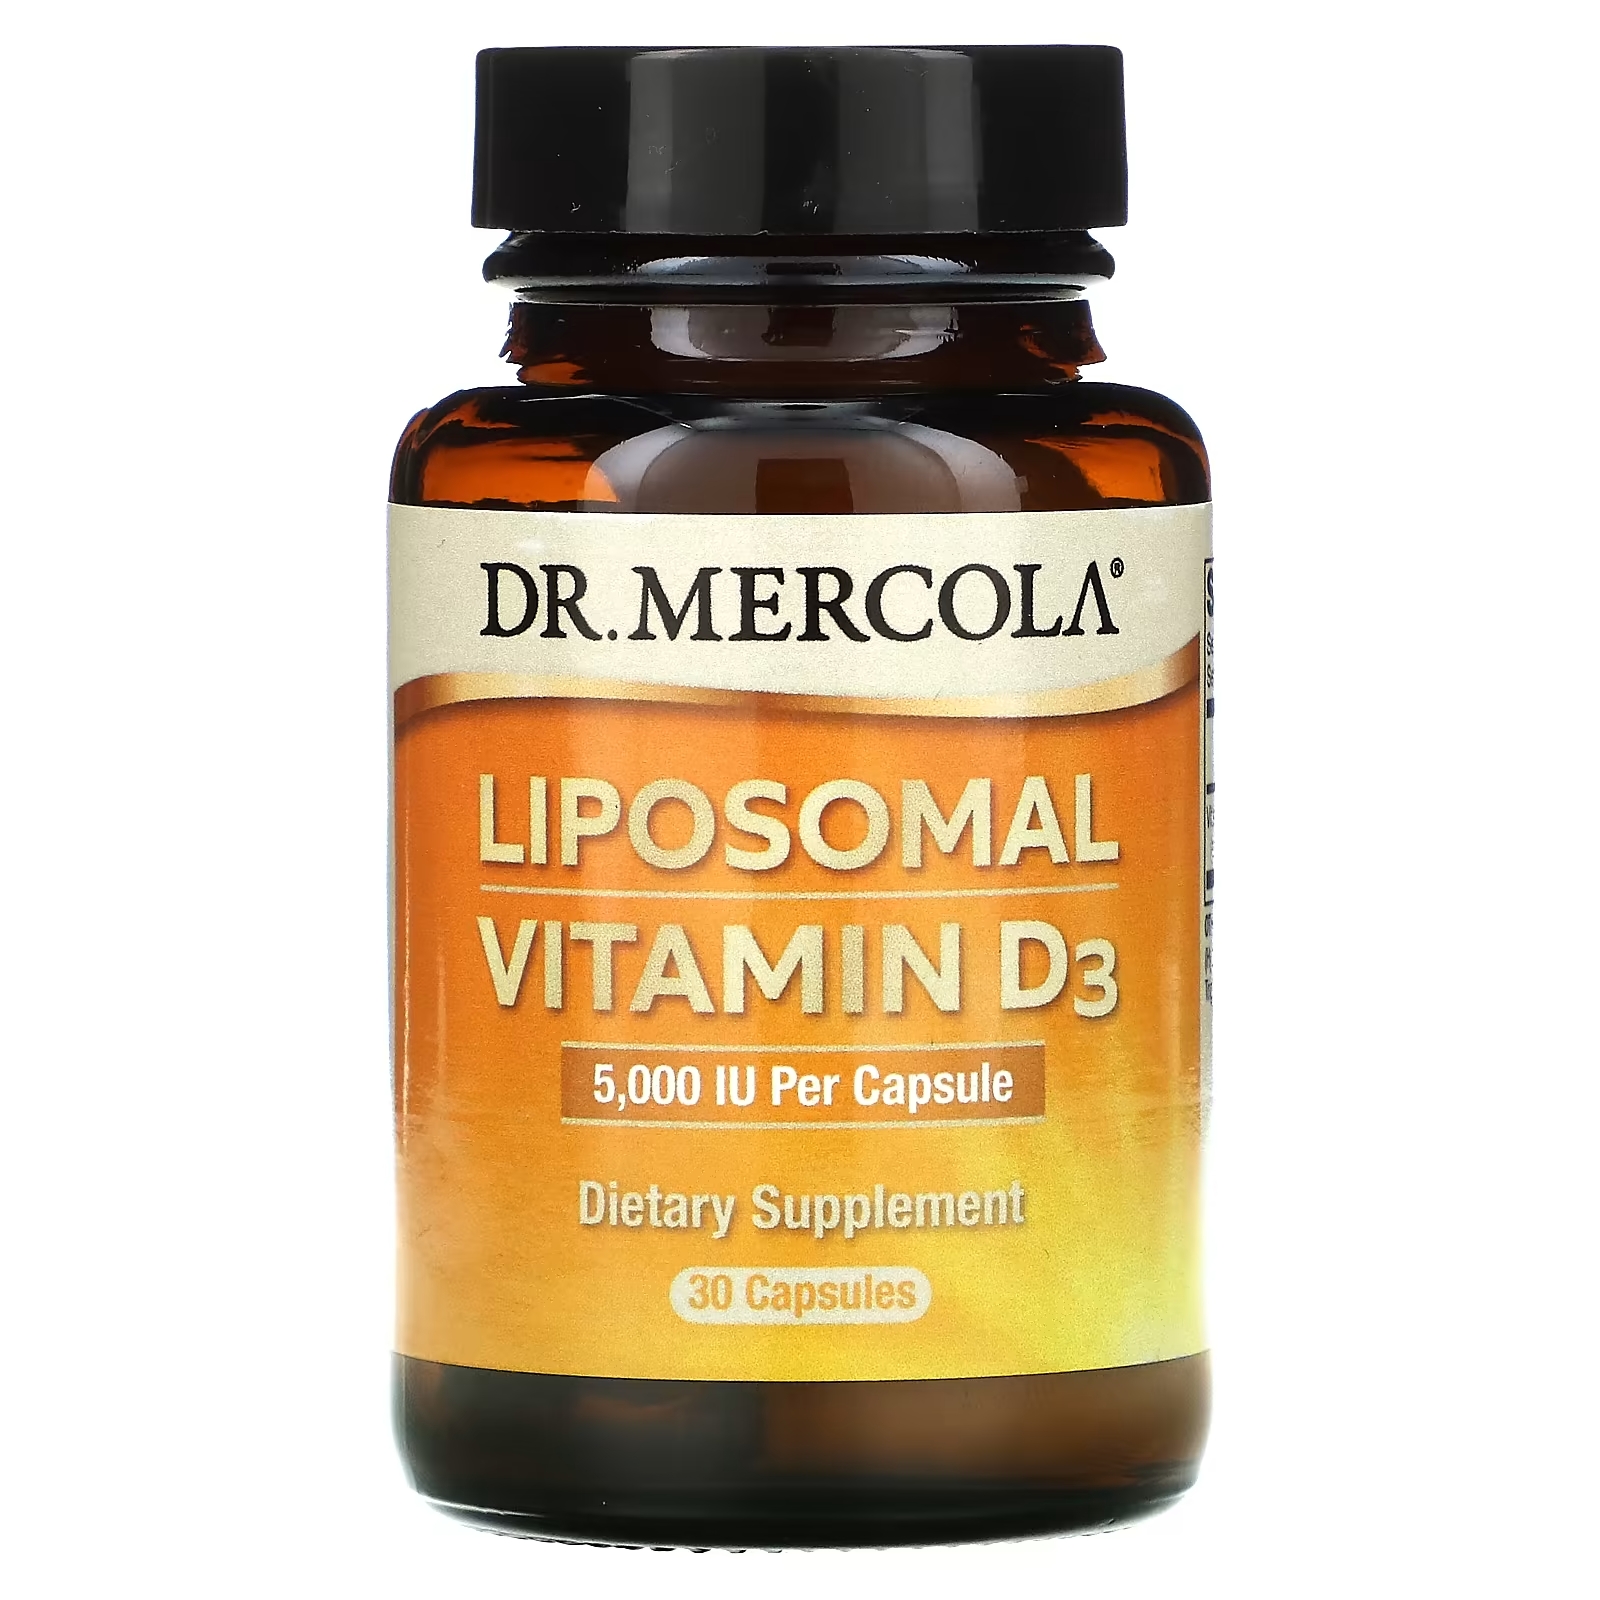 Dr. Mercola липосомальный витамин D3 5000 МЕ, 30 капсул dr mercola липосомальный витамин d3 5000 ме 90 капсул